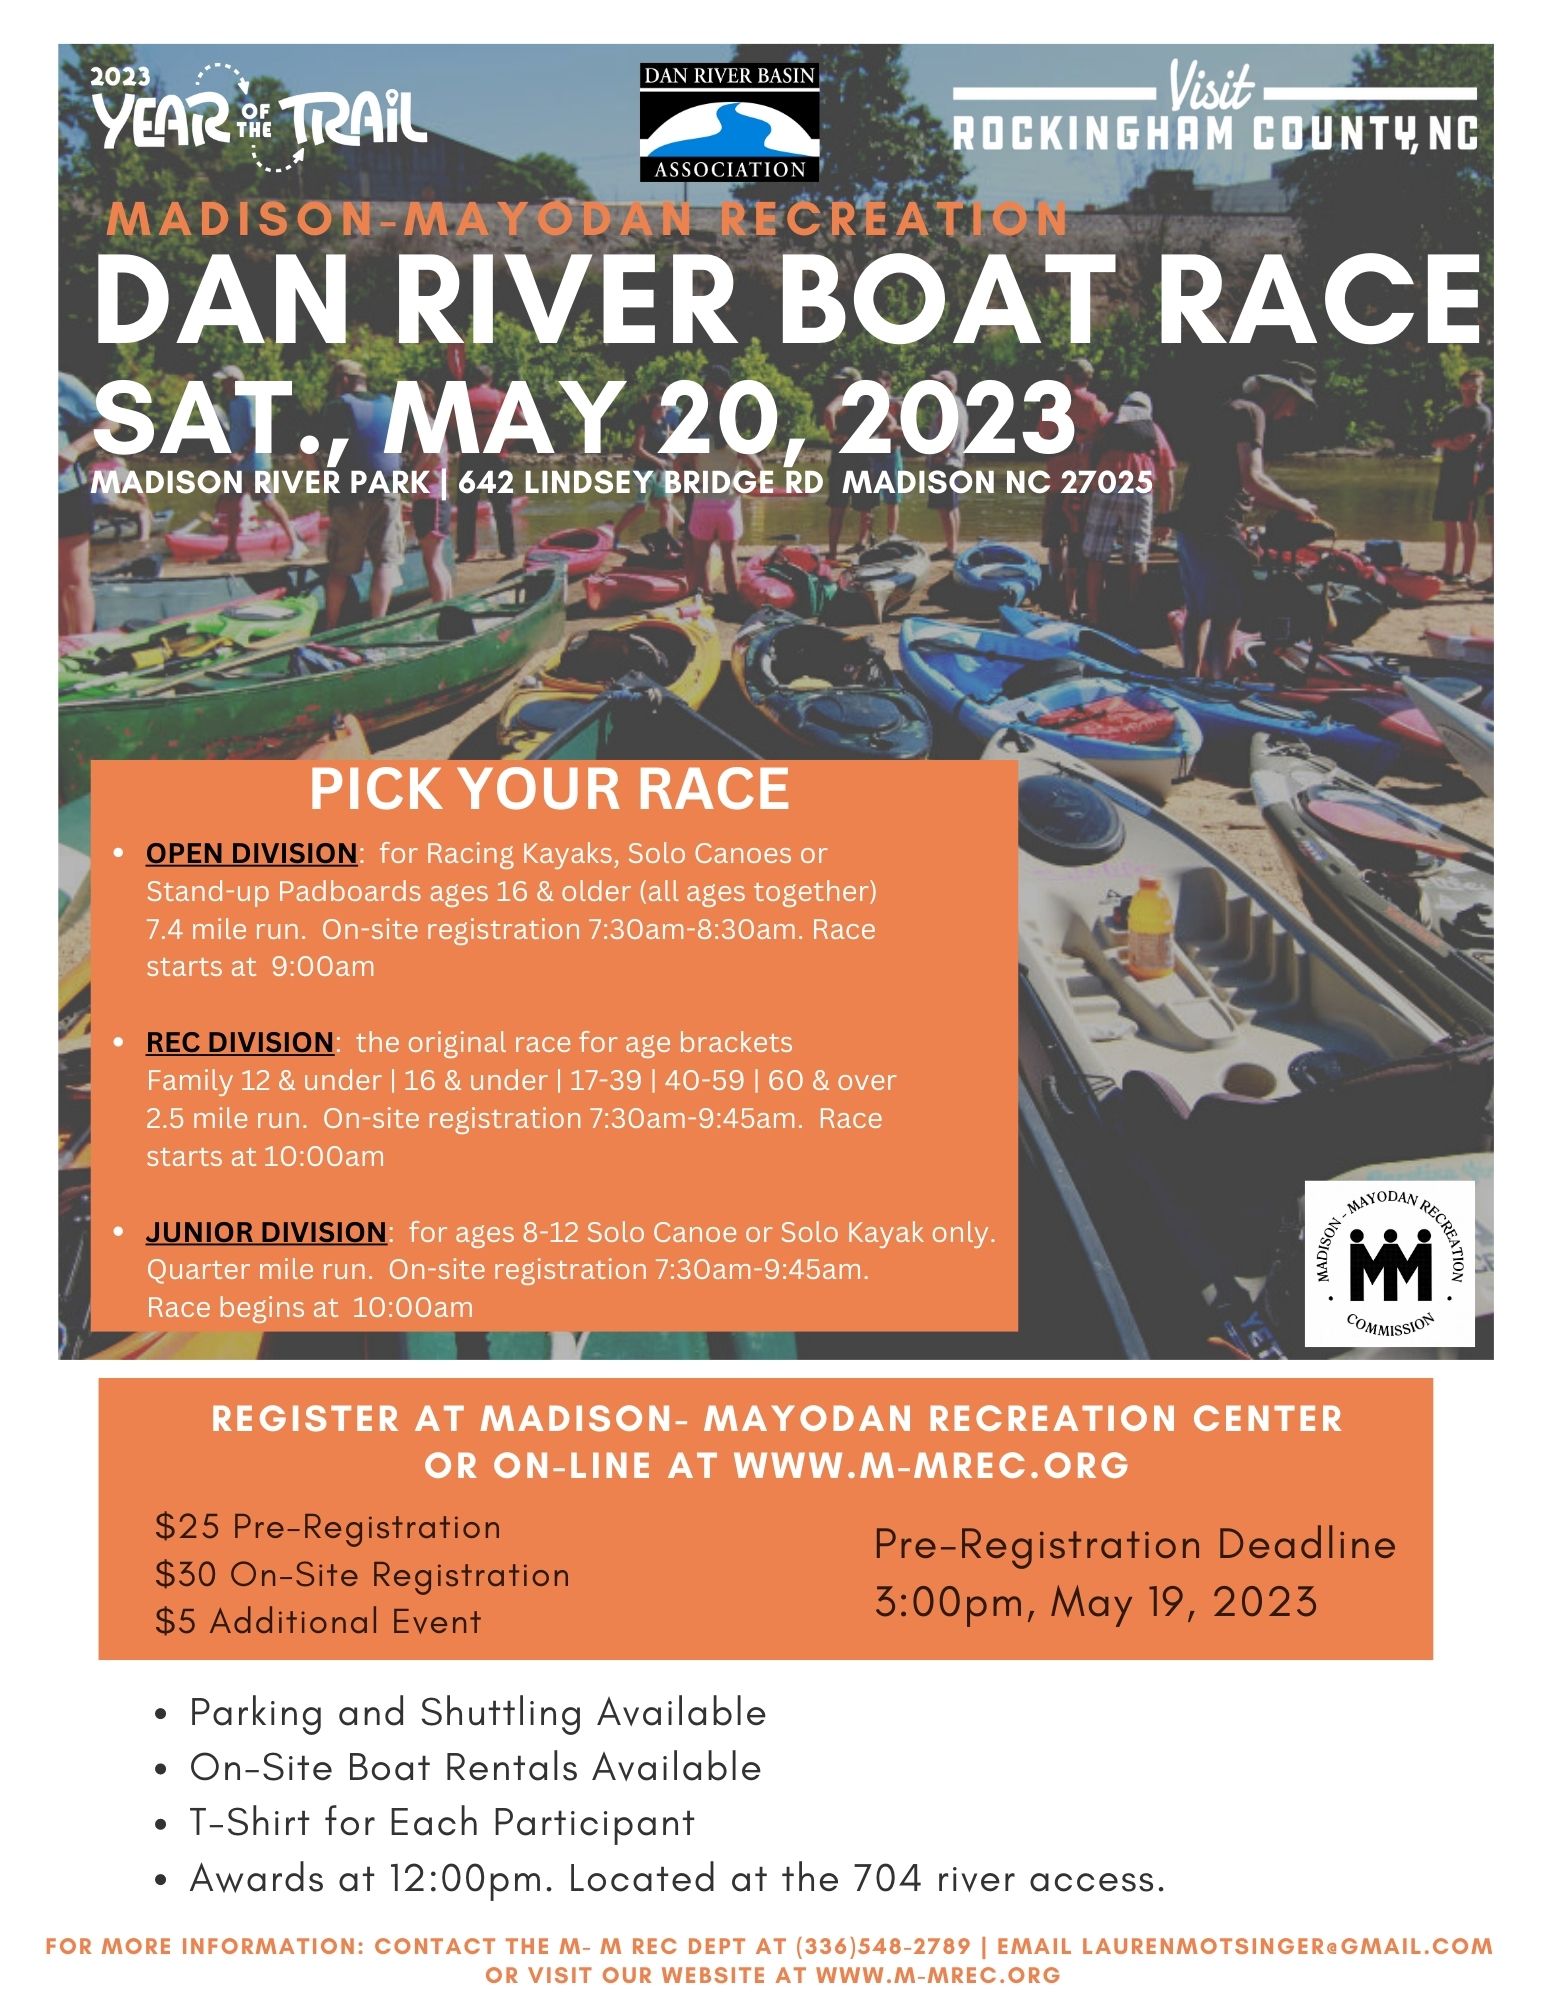 Dan River Boat Race Flyer, information on flyer in text below